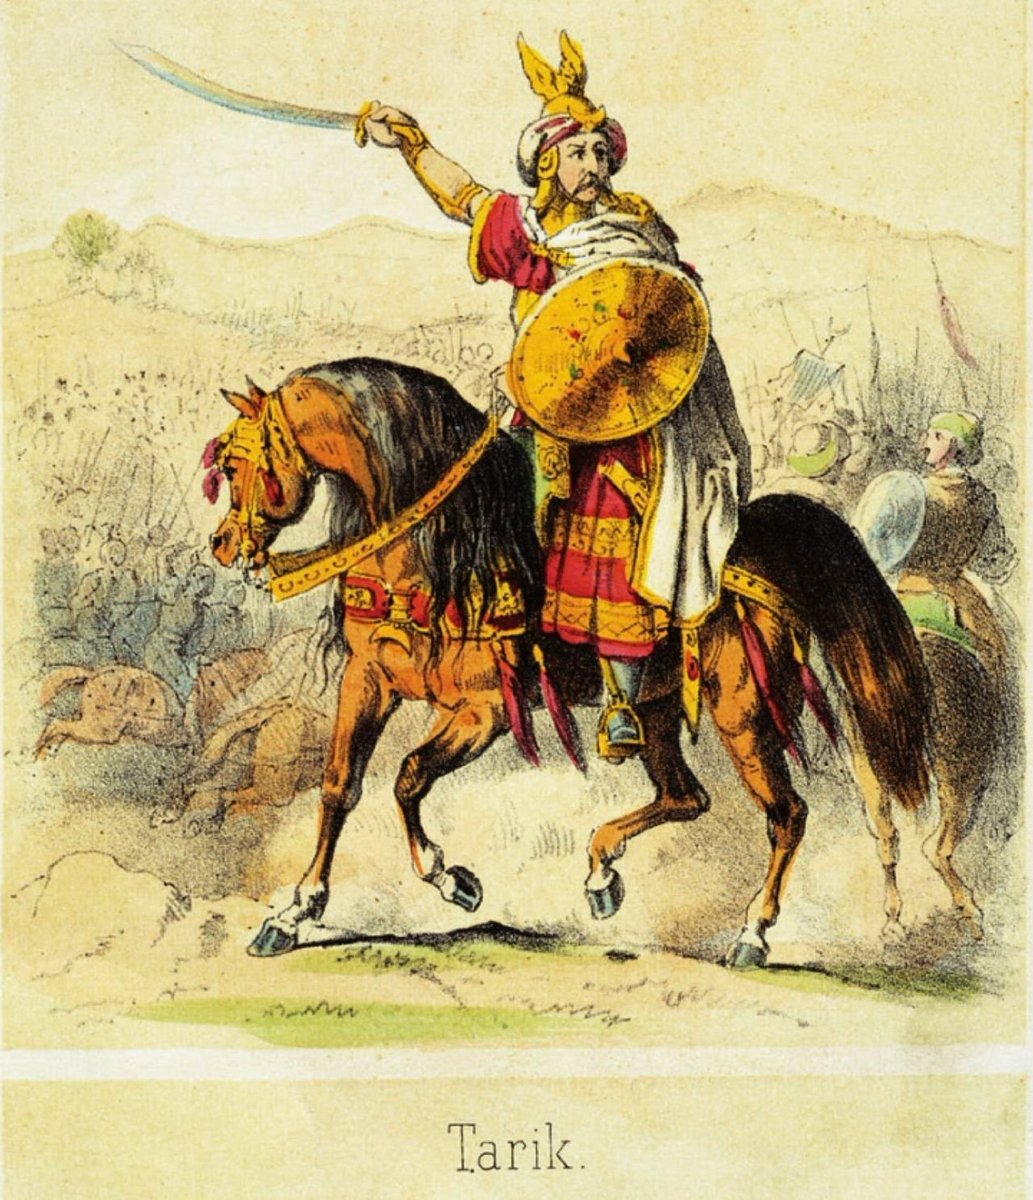 #TalDiaComoHoy de 711: mientras el rey Don Rodrigo se enfrenta a los vascones, Táriq ibn Ziyad llega a Tarifa (Cádiz) con su ejército y derrota a las fuerzas de Sancho, sobrino de Rodrigo, comenzando la invasión musulmana del Reino Visigodo.